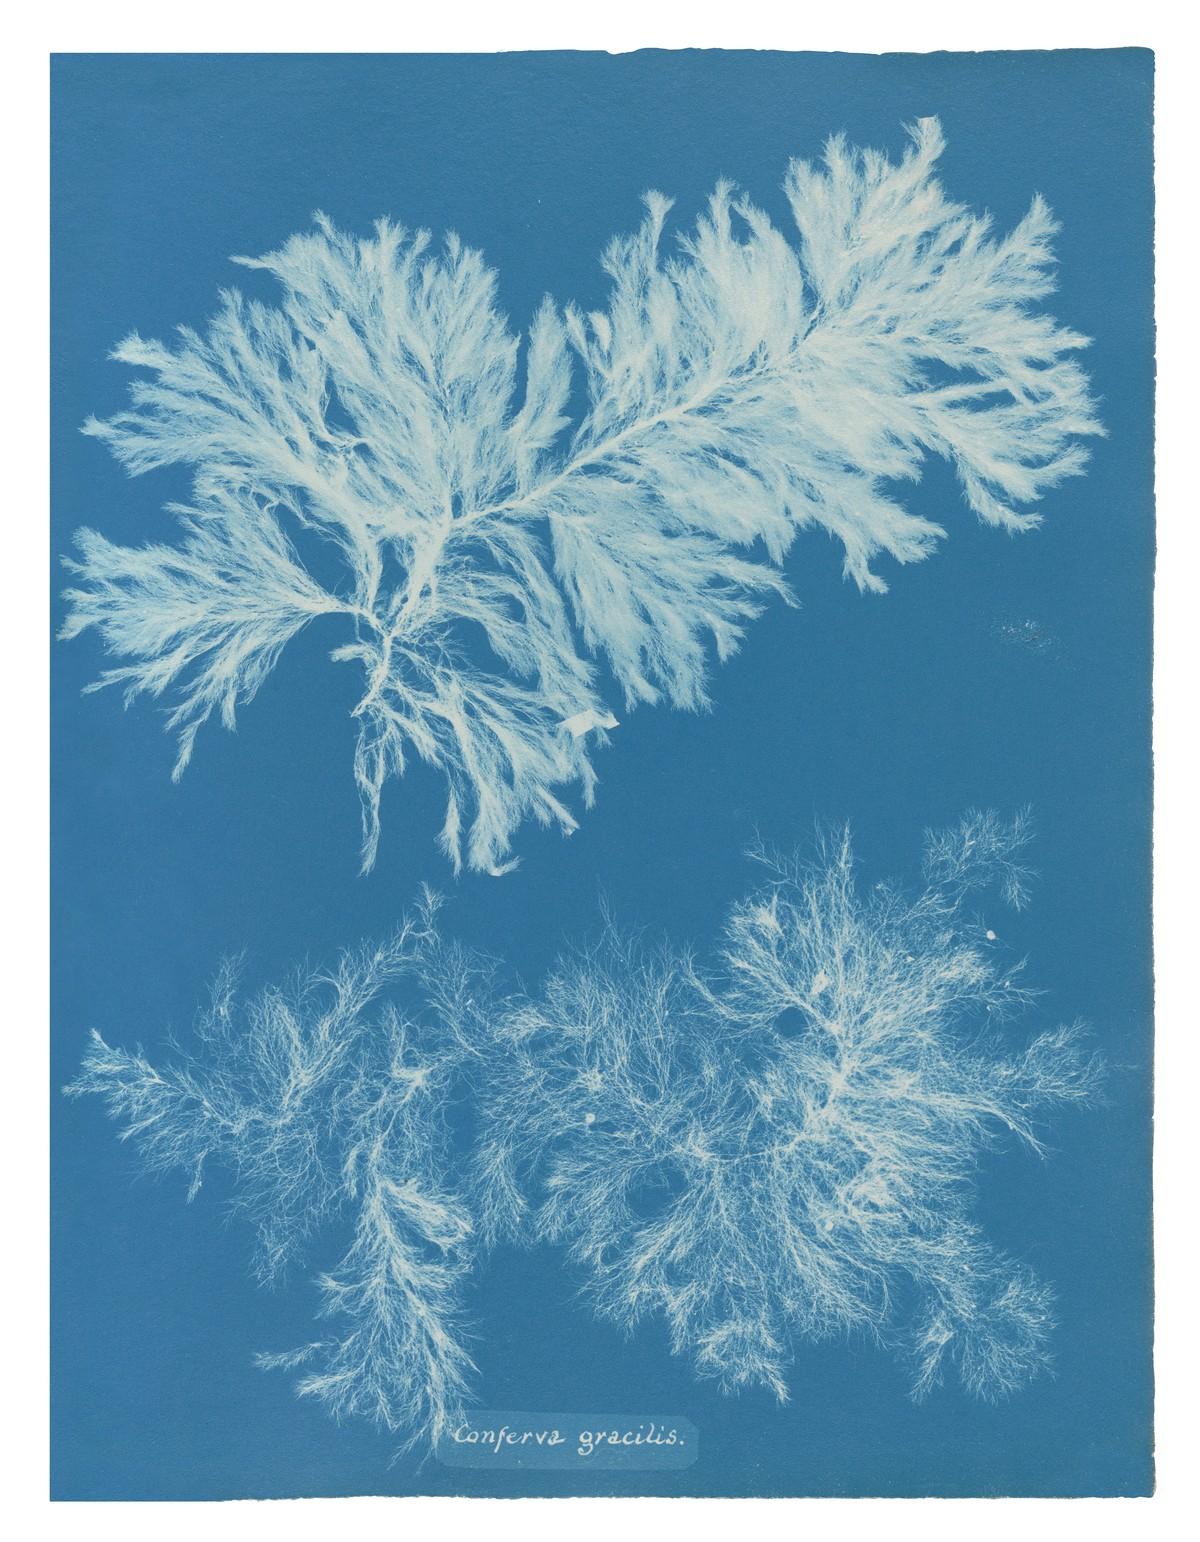 Die unnachahmlichen Cyanotypie-Fotogramme von Algen und Farnen, die Atkins anfertigte, bilden die ersten Bücher mit Fotografien. | Foto: TASCHEN / New York Public Library